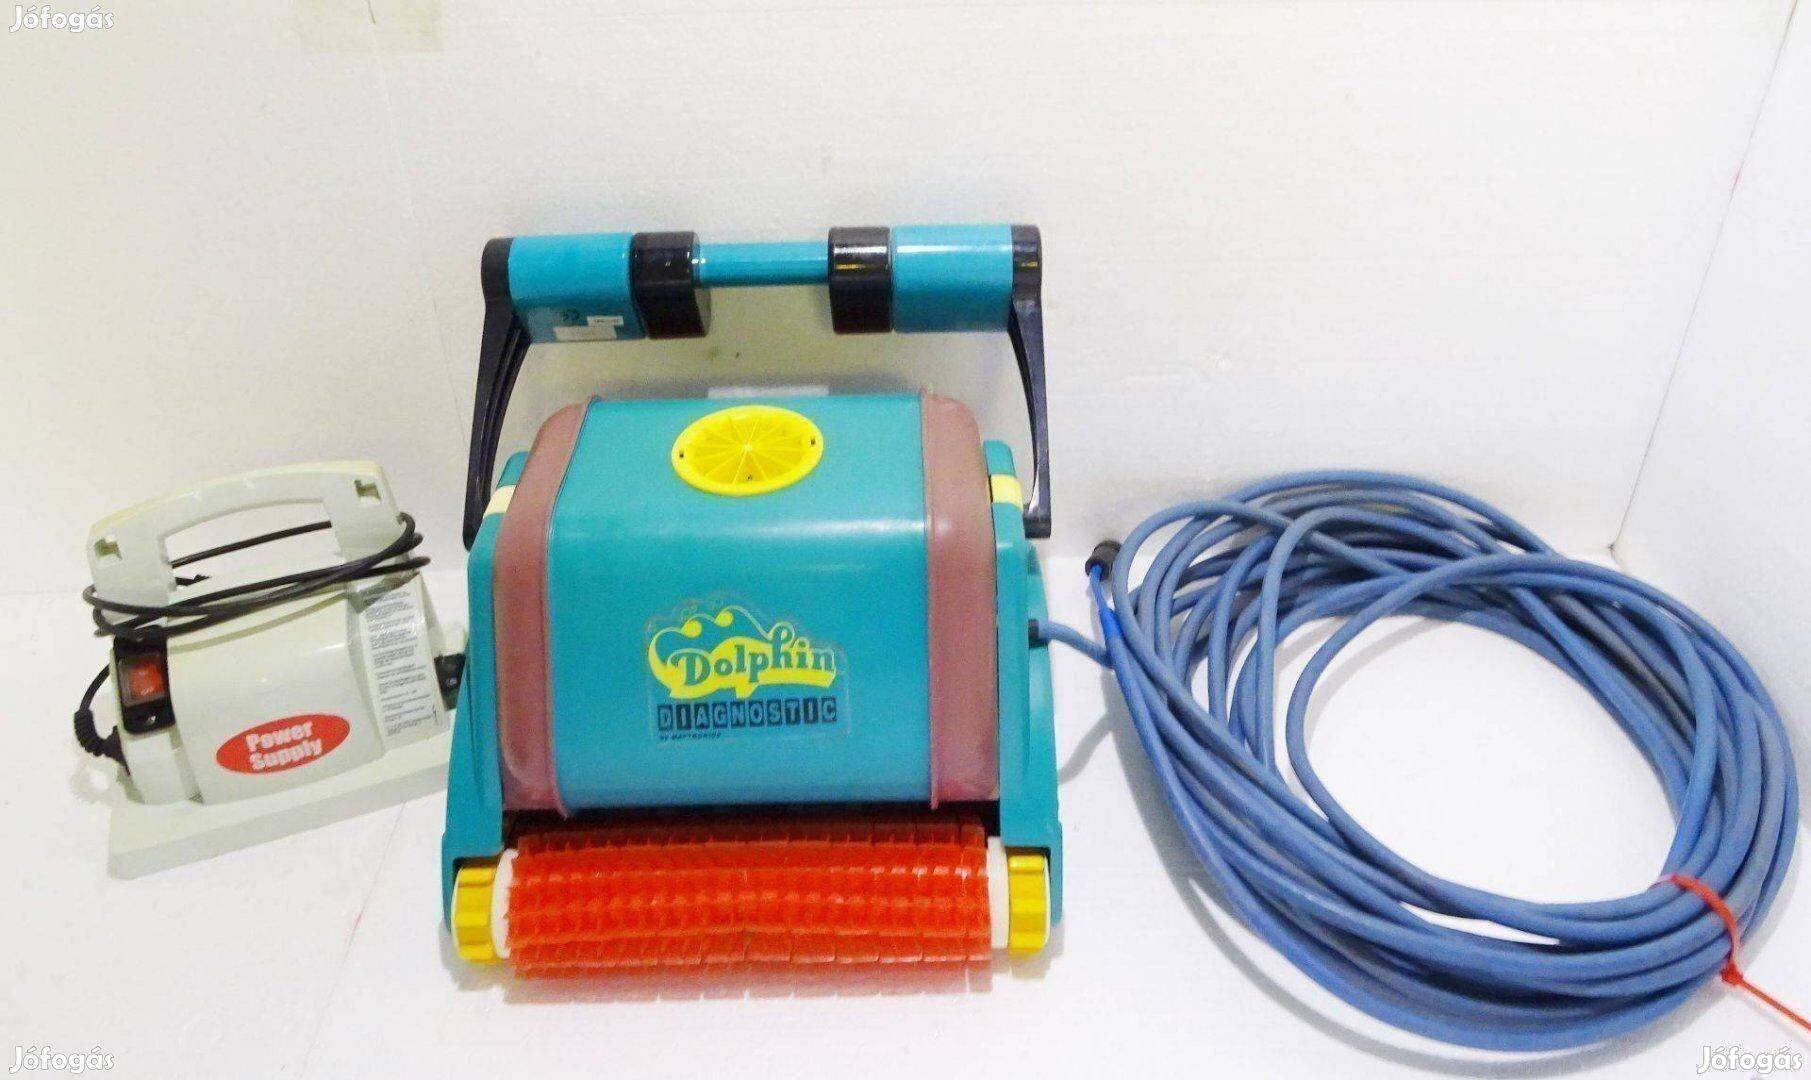 Dolphin Diagnostic automata medence porszívó robot takarító tisztító